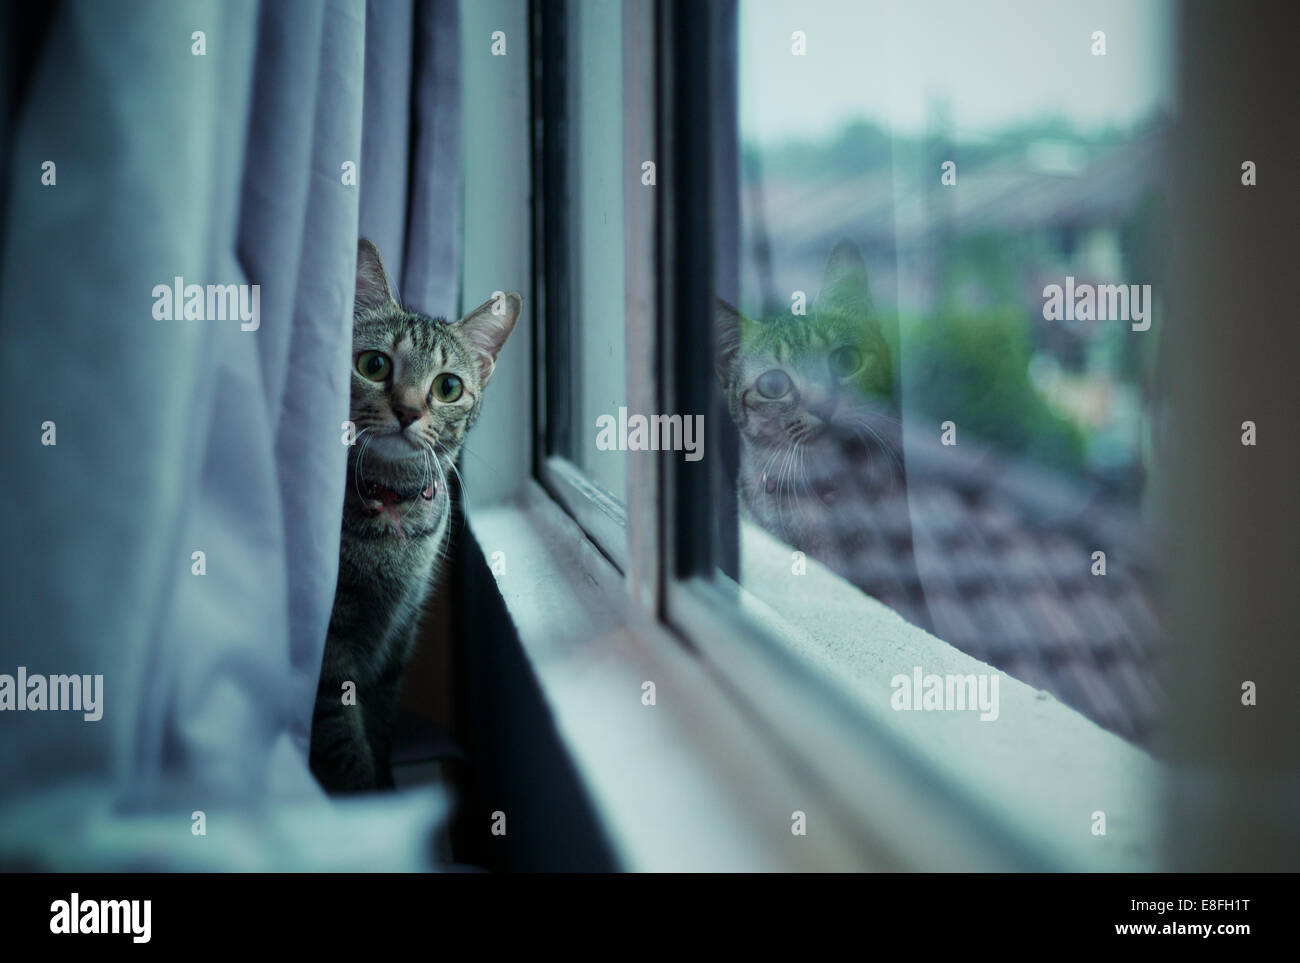 Malaysia, Selangor, Kota Damansara, Cat staring behind curtain Stock Photo